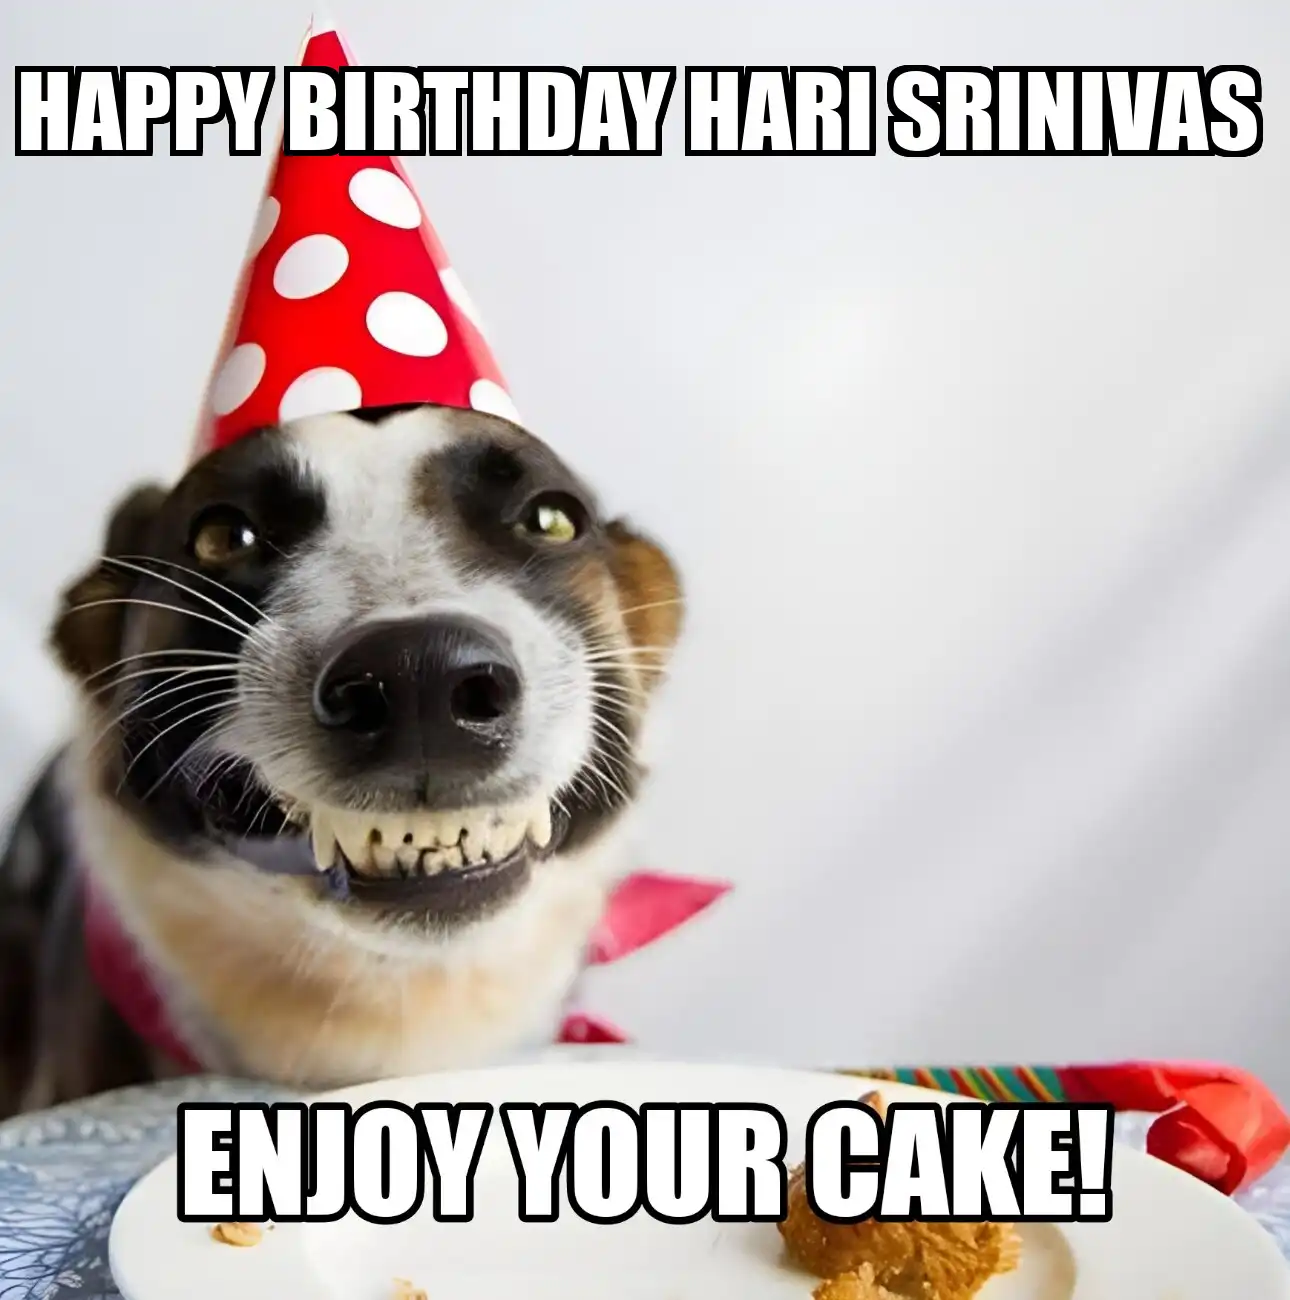 Happy Birthday Hari srinivas Enjoy Your Cake Dog Meme